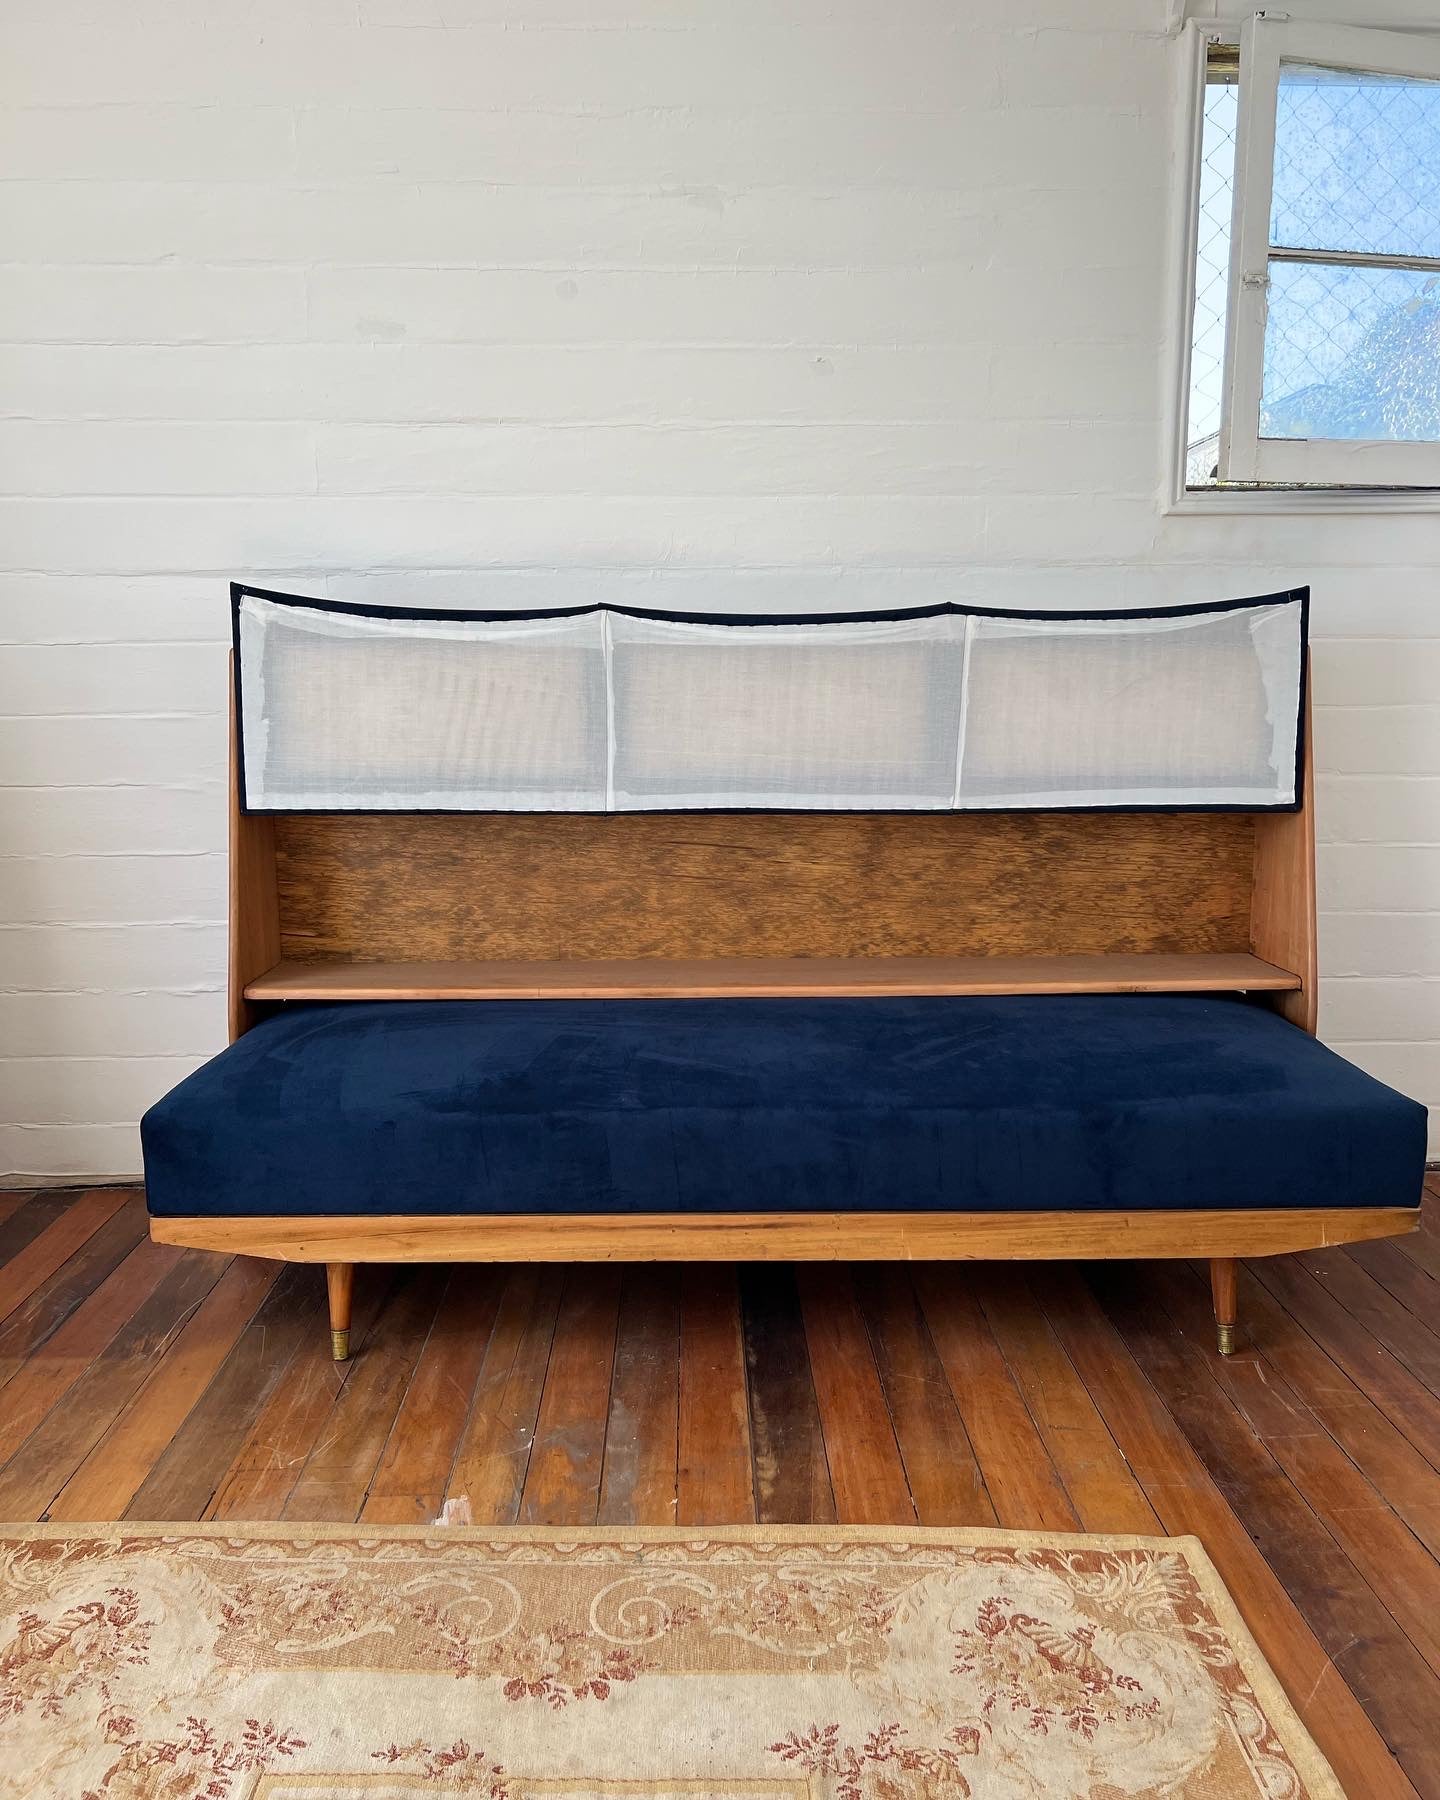 Sofa cama